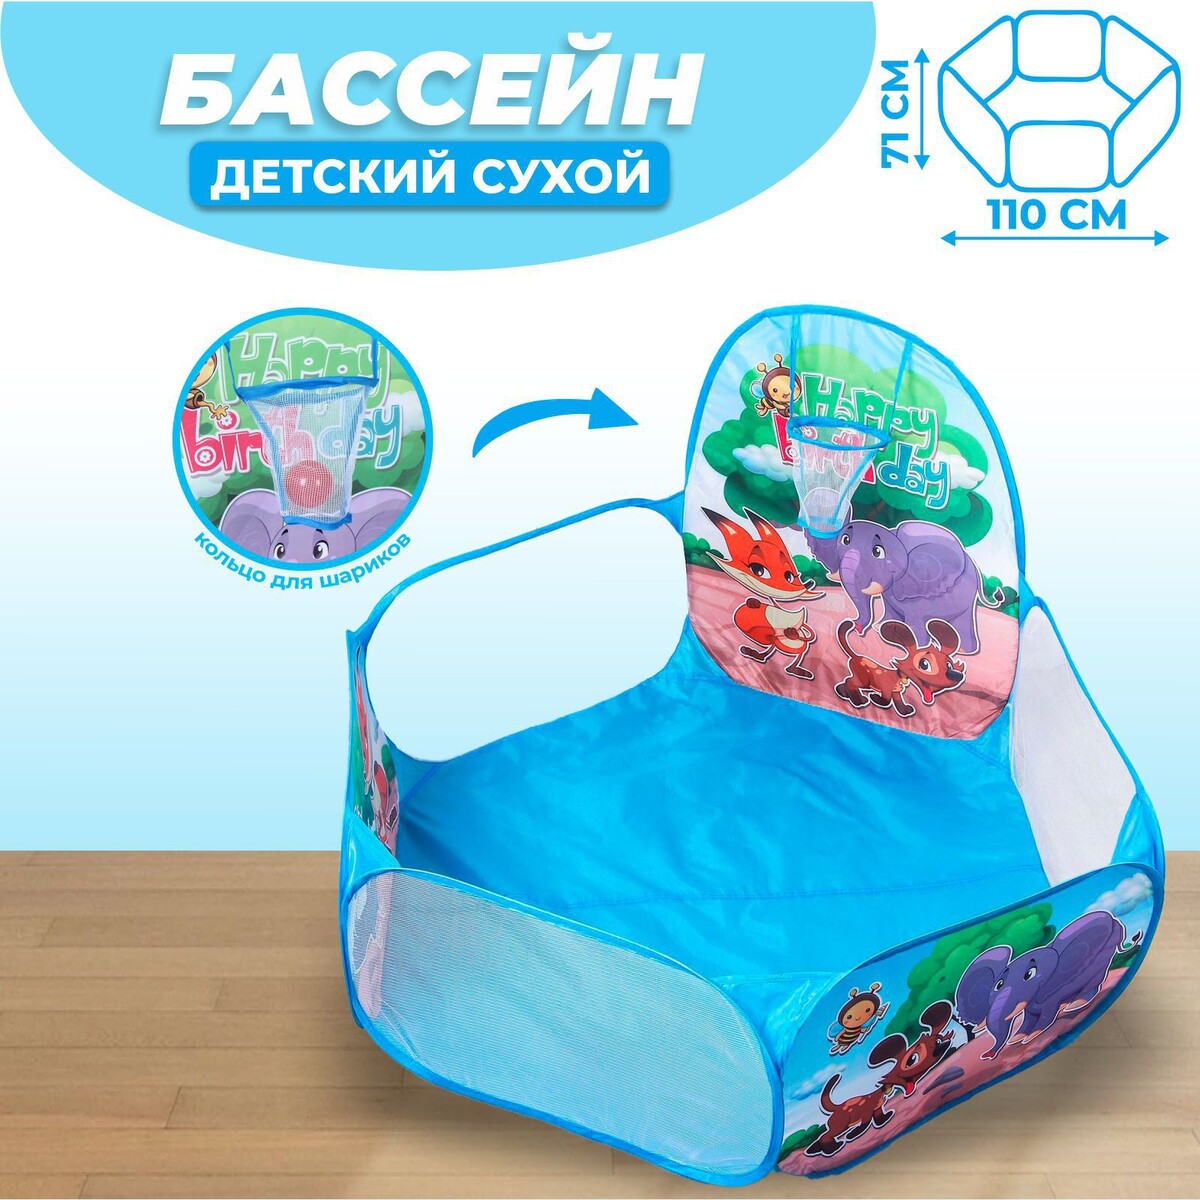 Палатка детская игровая - сухой бассейн для шариков пакеты для льда from siberiа with love 216 шариков в пакете